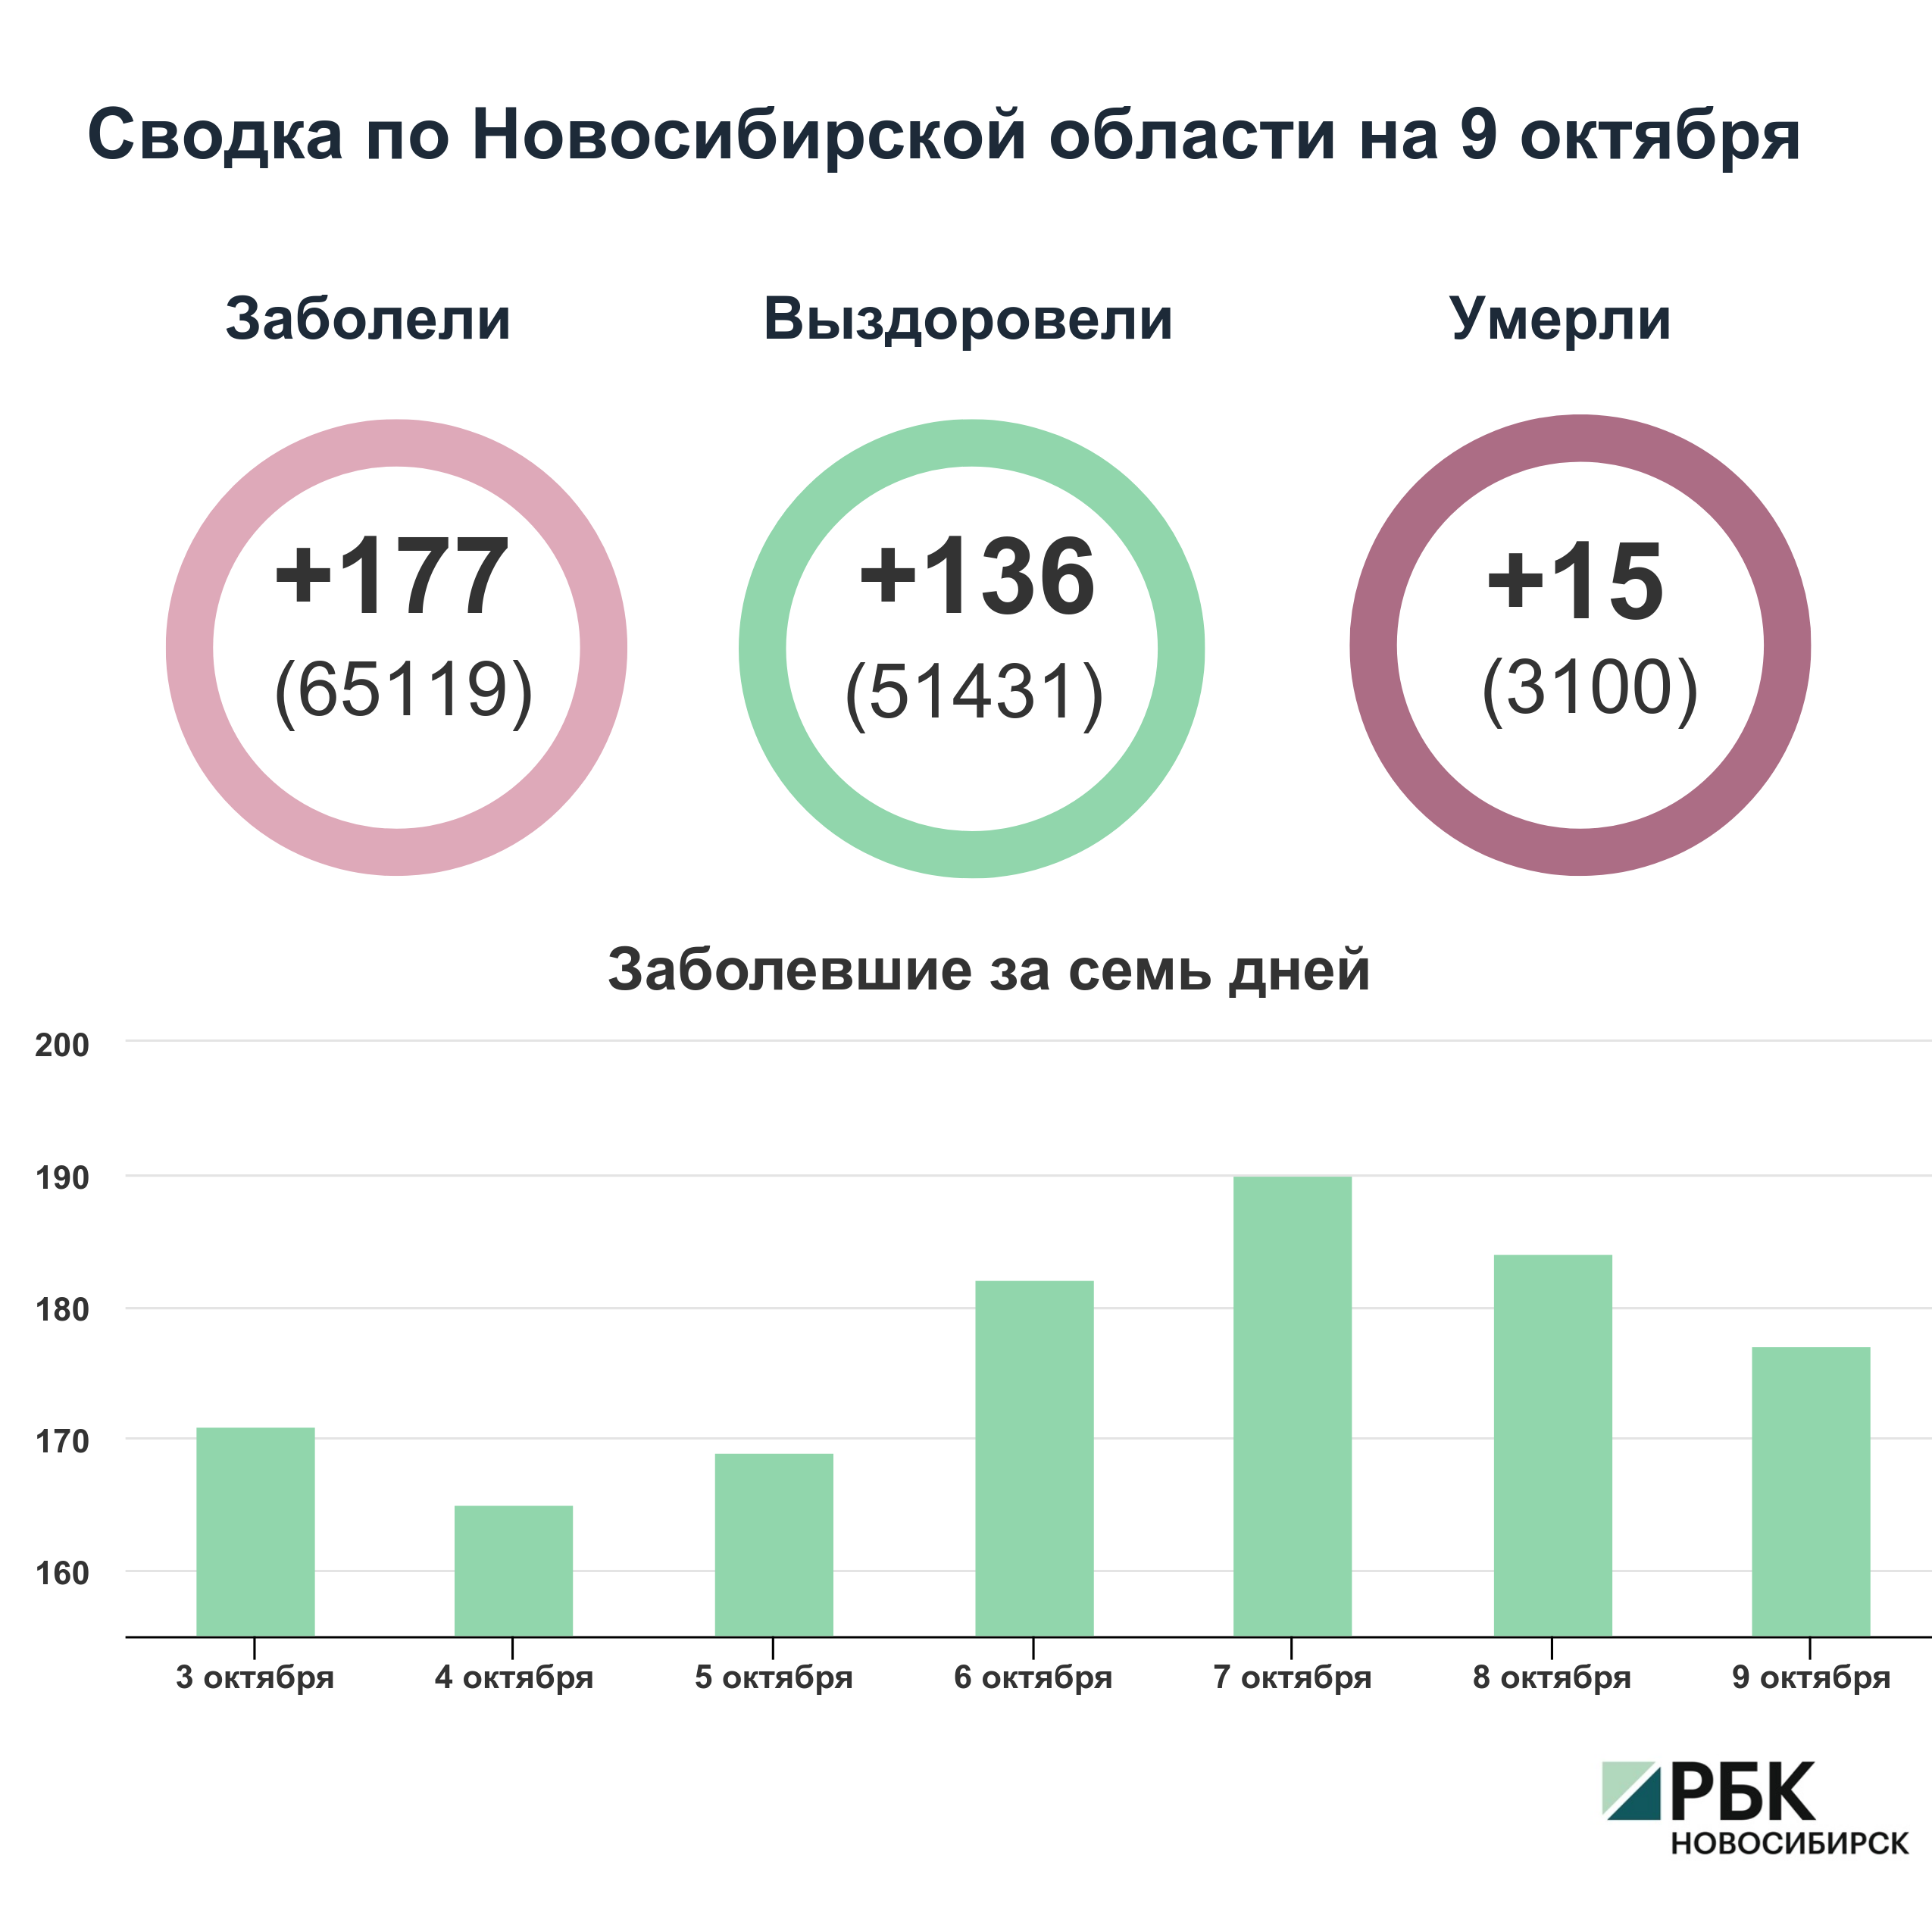 Коронавирус в Новосибирске: сводка на 9 октября